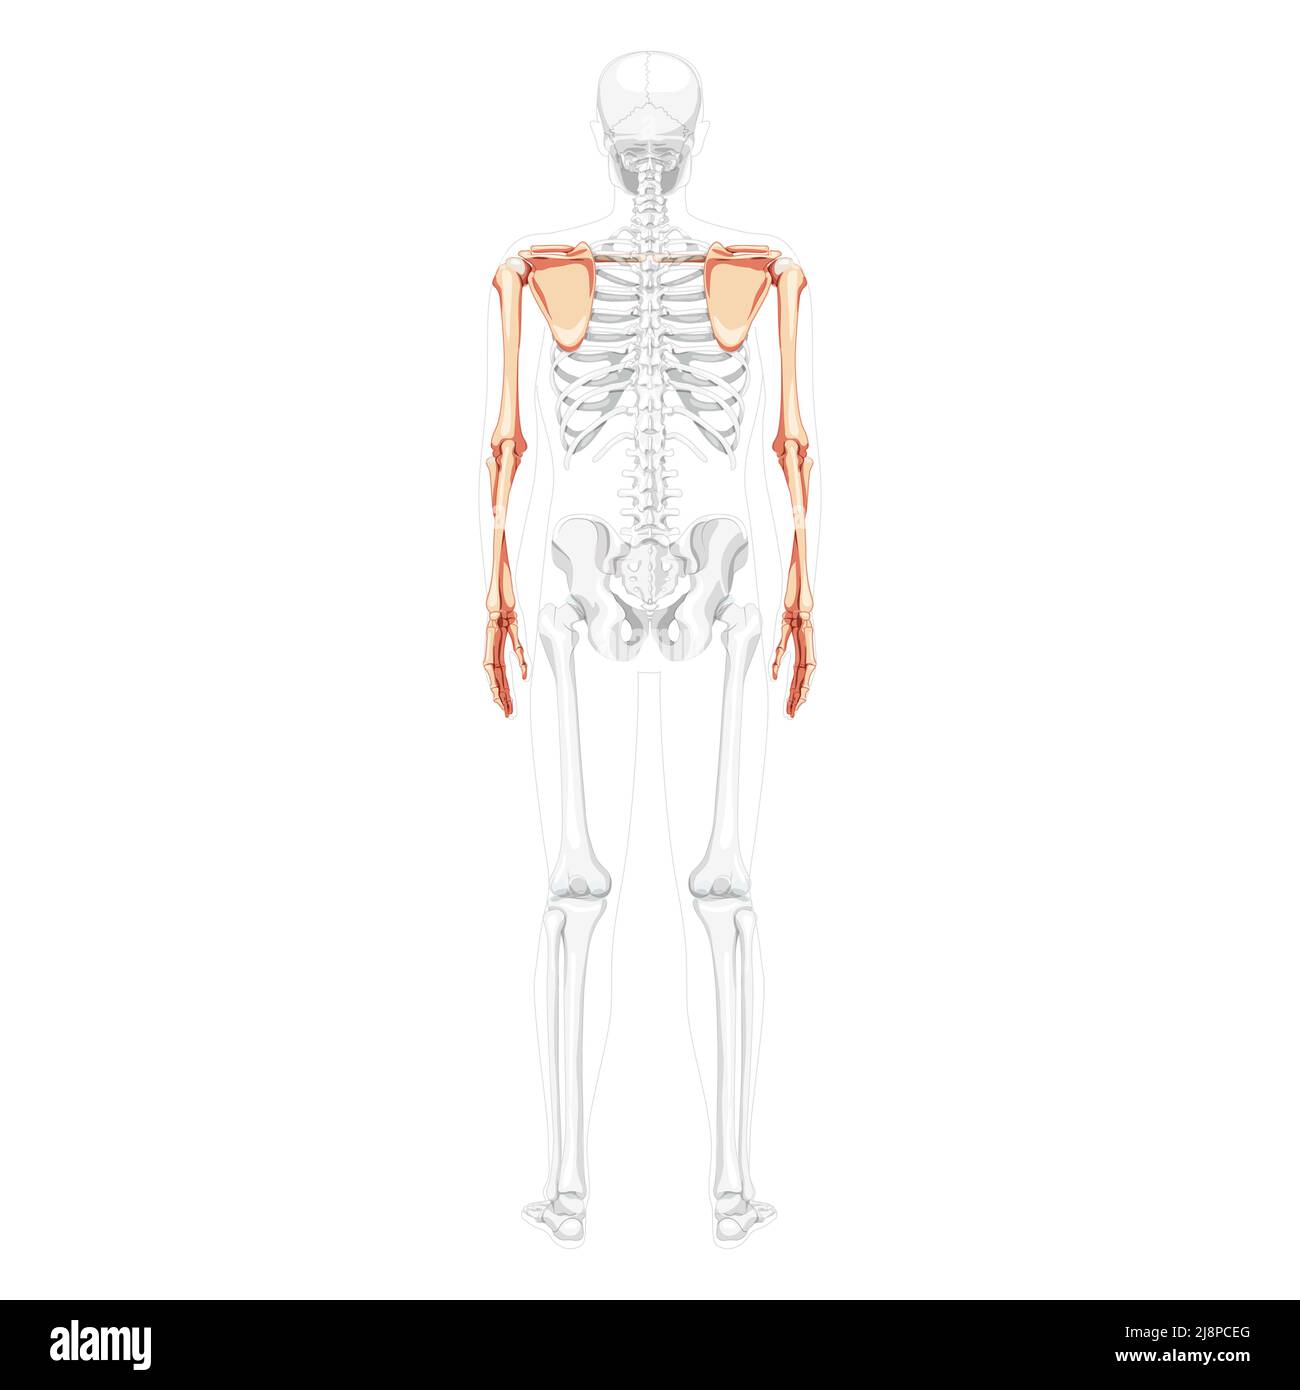 Scheletro arto superiore braccia con cintura spalla visione posteriore umana con posizione delle ossa parzialmente trasparente. Mani realistiche colore naturale piatto immagine vettoriale di anatomia isolata su sfondo bianco Illustrazione Vettoriale